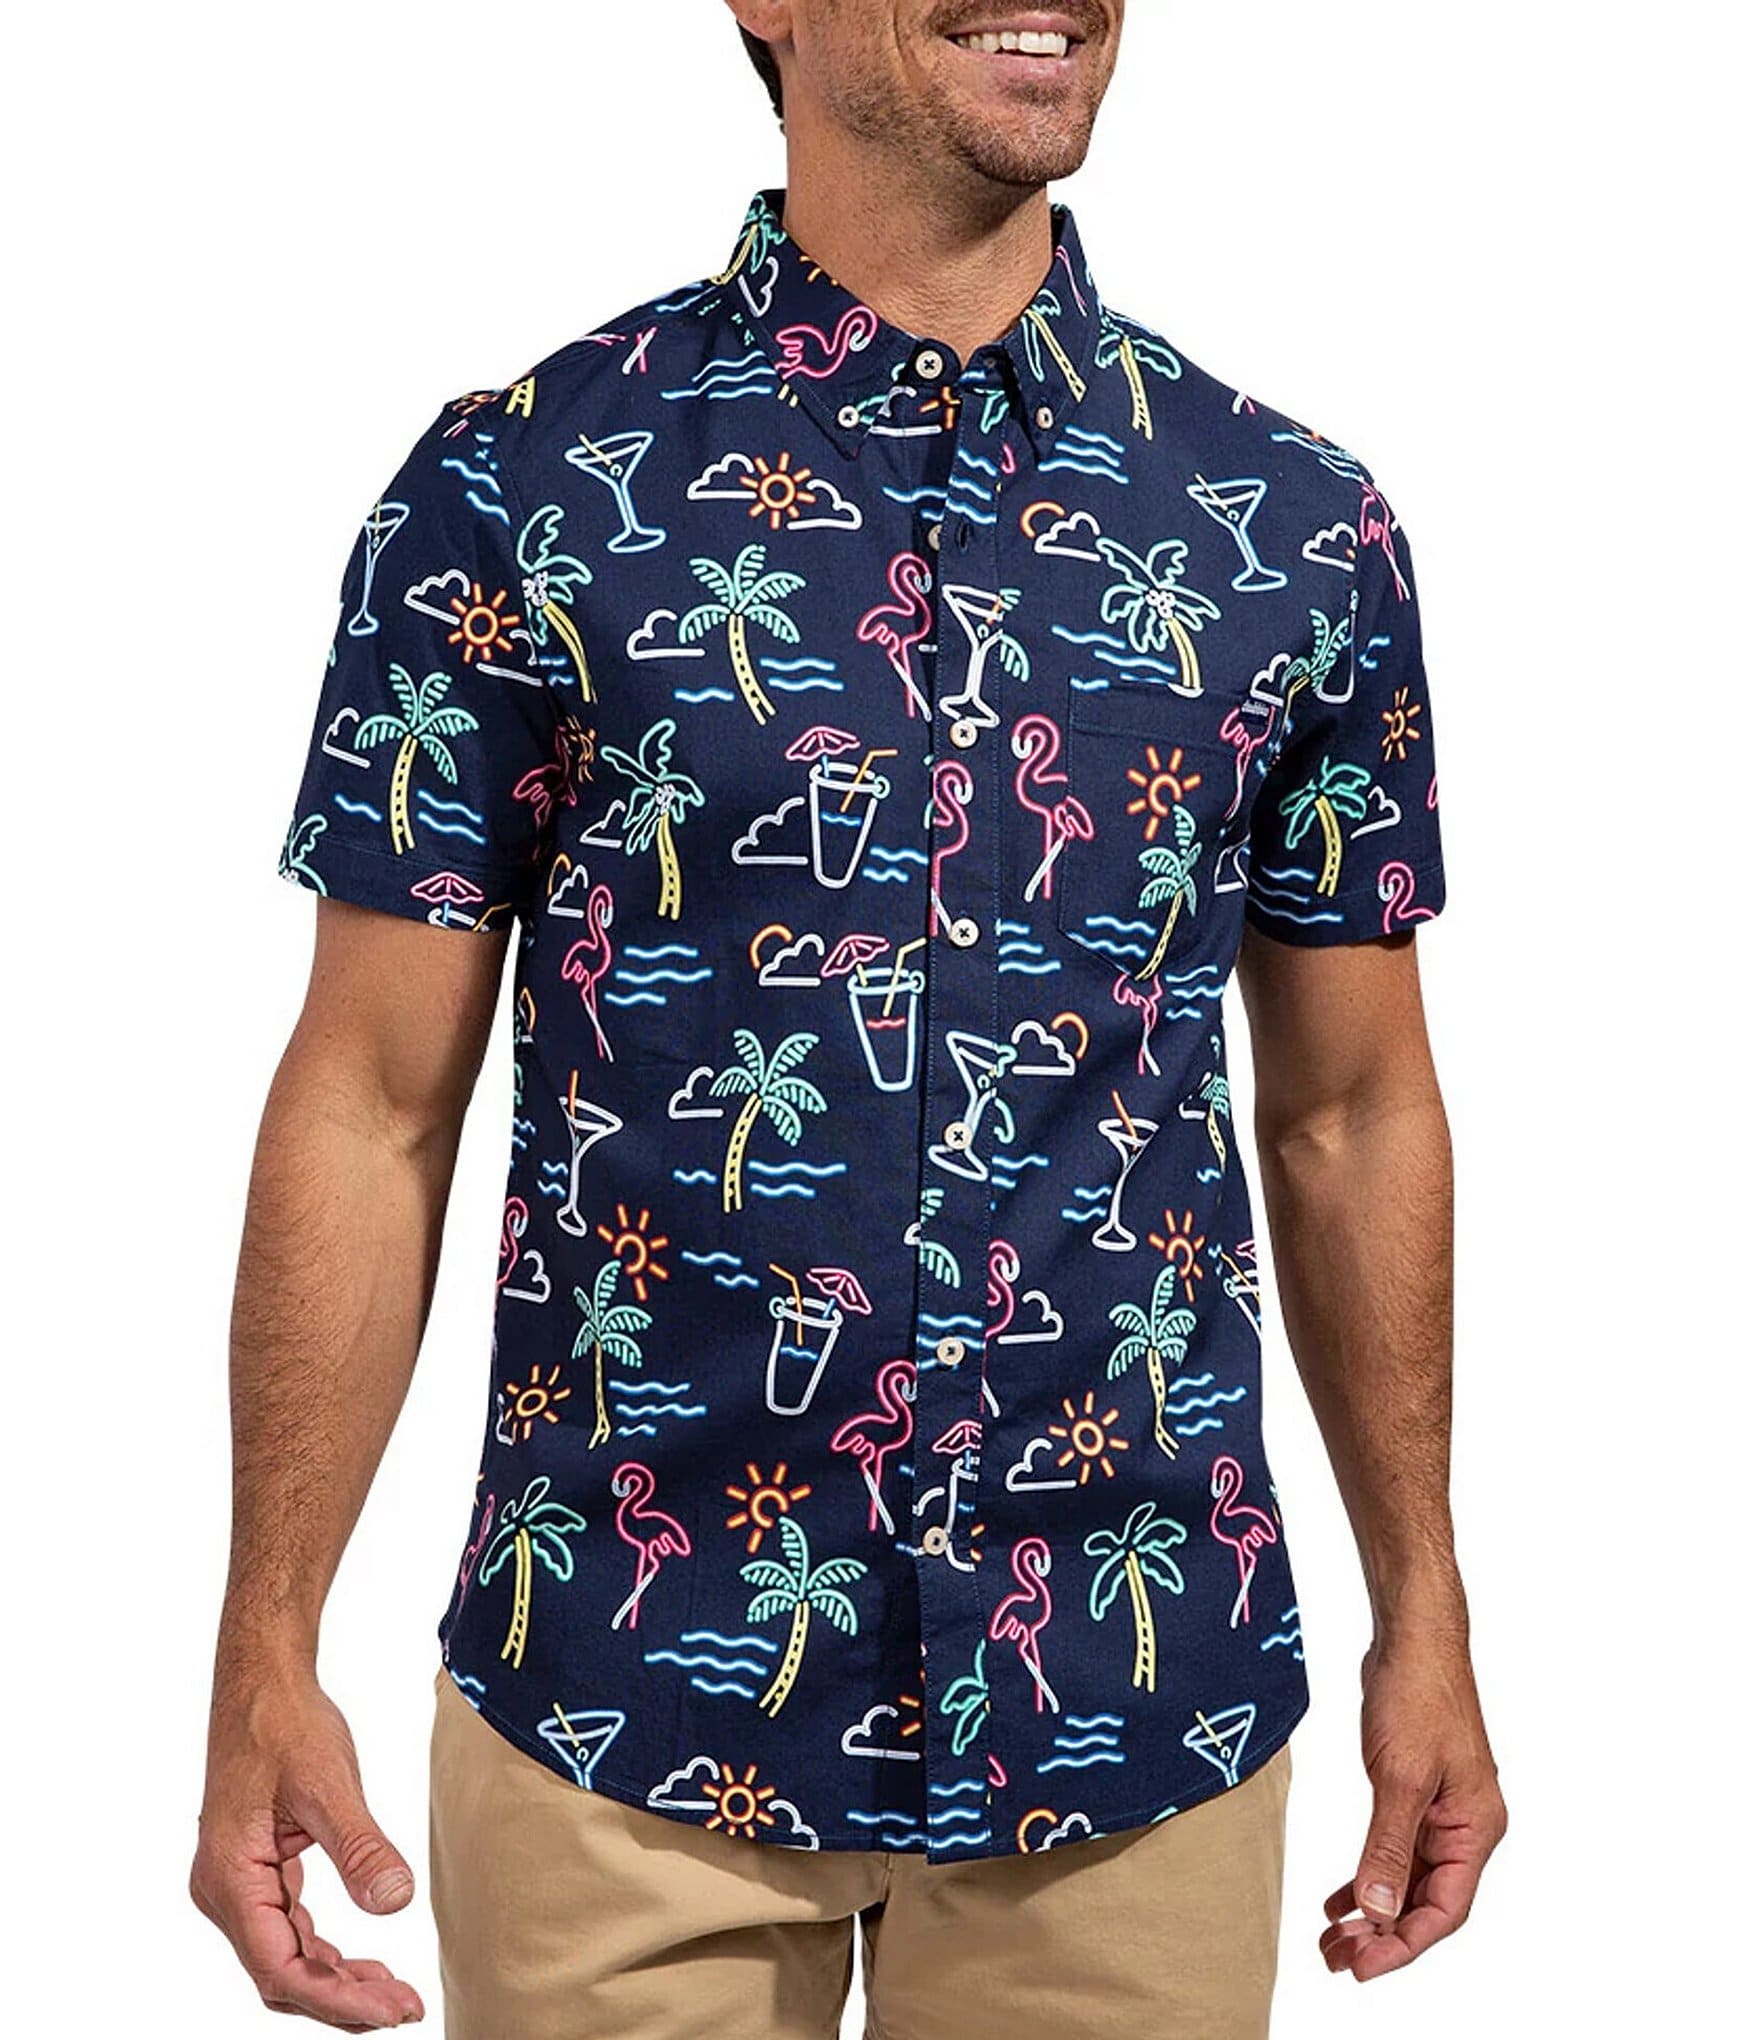 Antigua MLB Houston Astros Spark Short-Sleeve Polo Shirt, Dillard's